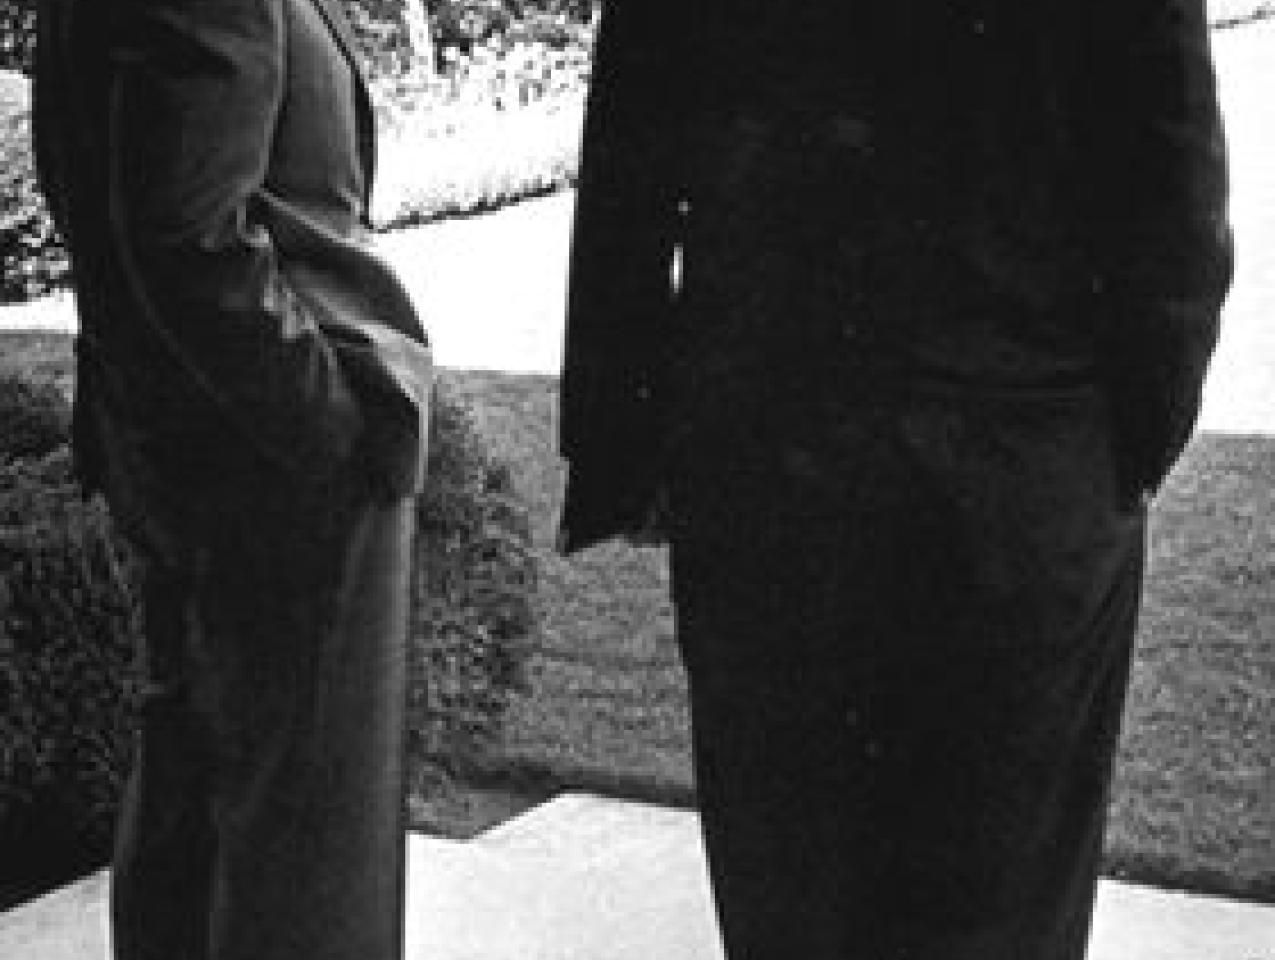 George Shultz and Richard Nixon